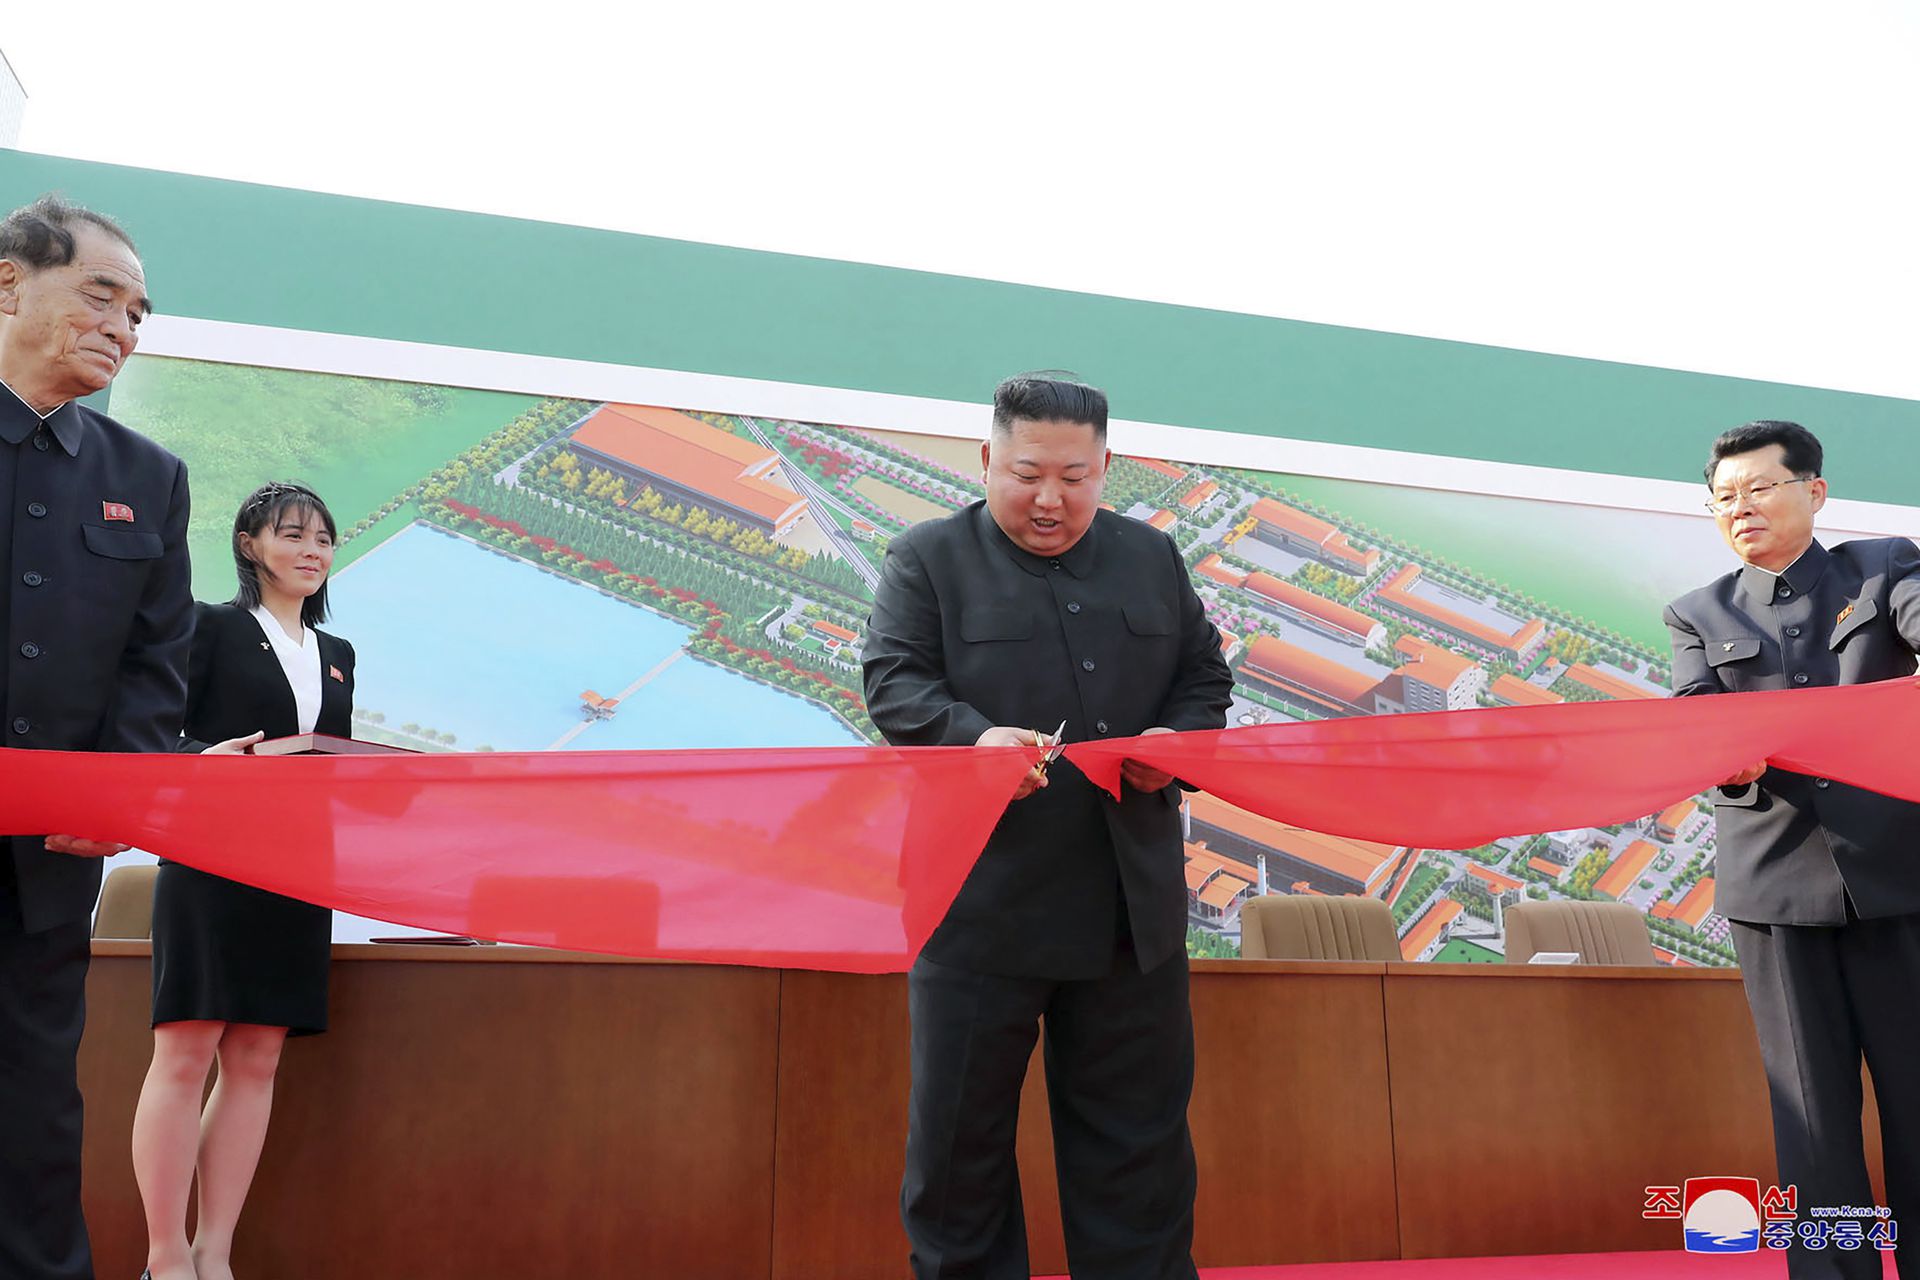 金正恩于2020年5月1日出席位于平安南道的顺天磷肥工厂竣工仪式，金与正（右三）为其递上剪彩用的剪刀。（Reuters）